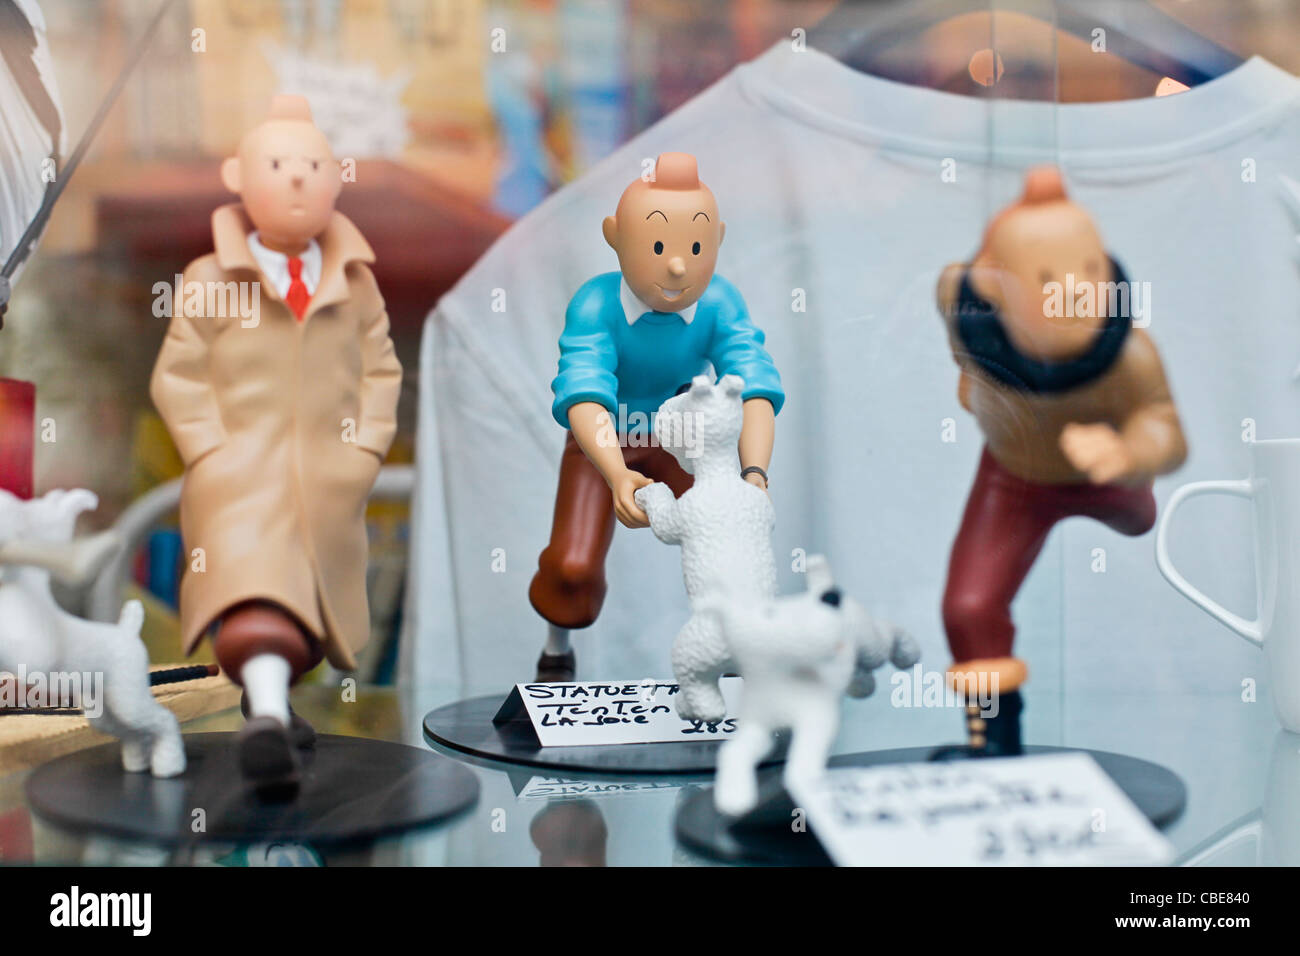 Boutique de Collection Tintin : figurine, affiche